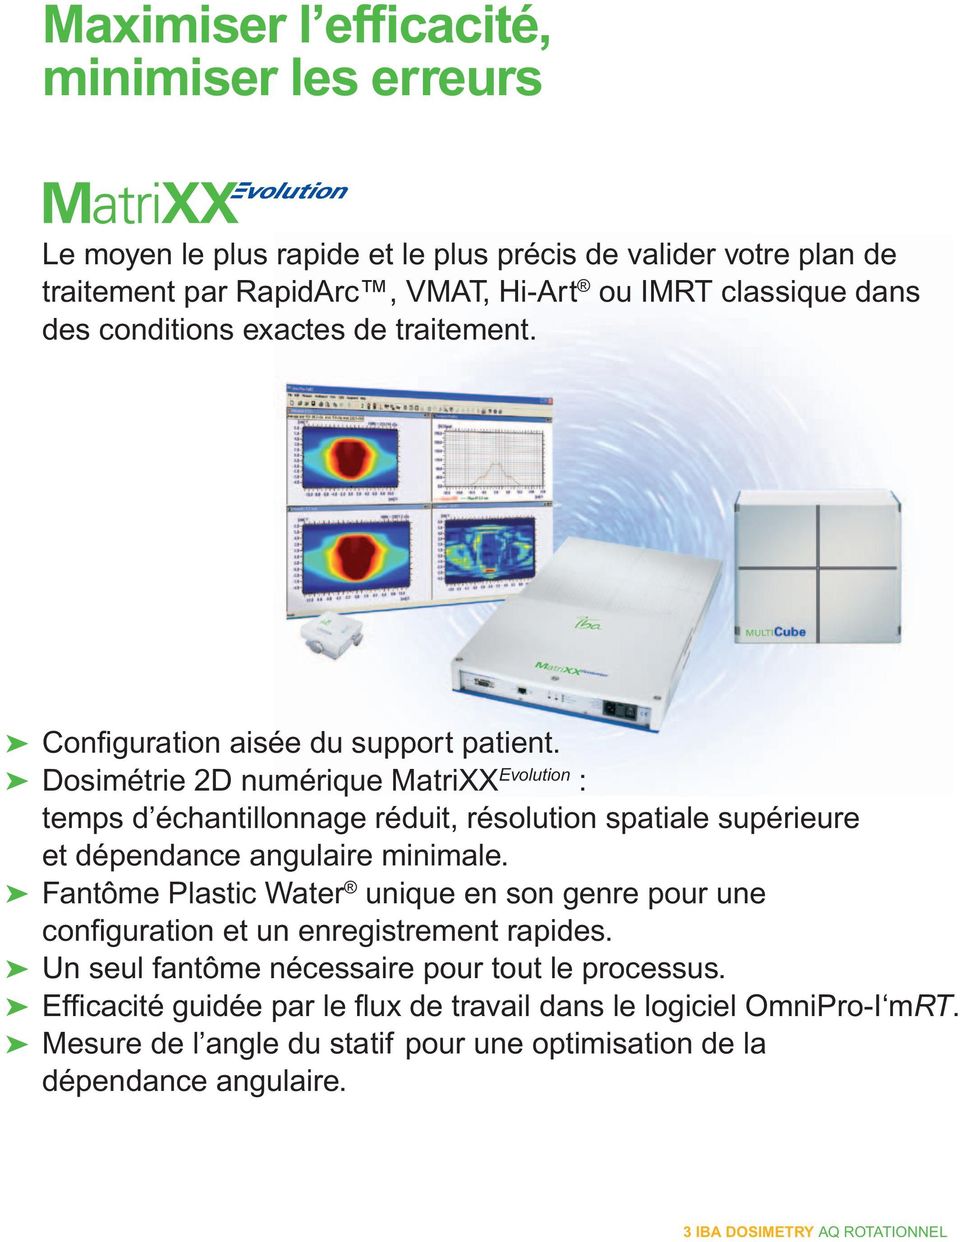 Dosimétrie 2D numérique MatriXX Evolution : temps d échantillonnage réduit, résolution spatiale supérieure et dépendance angulaire minimale.